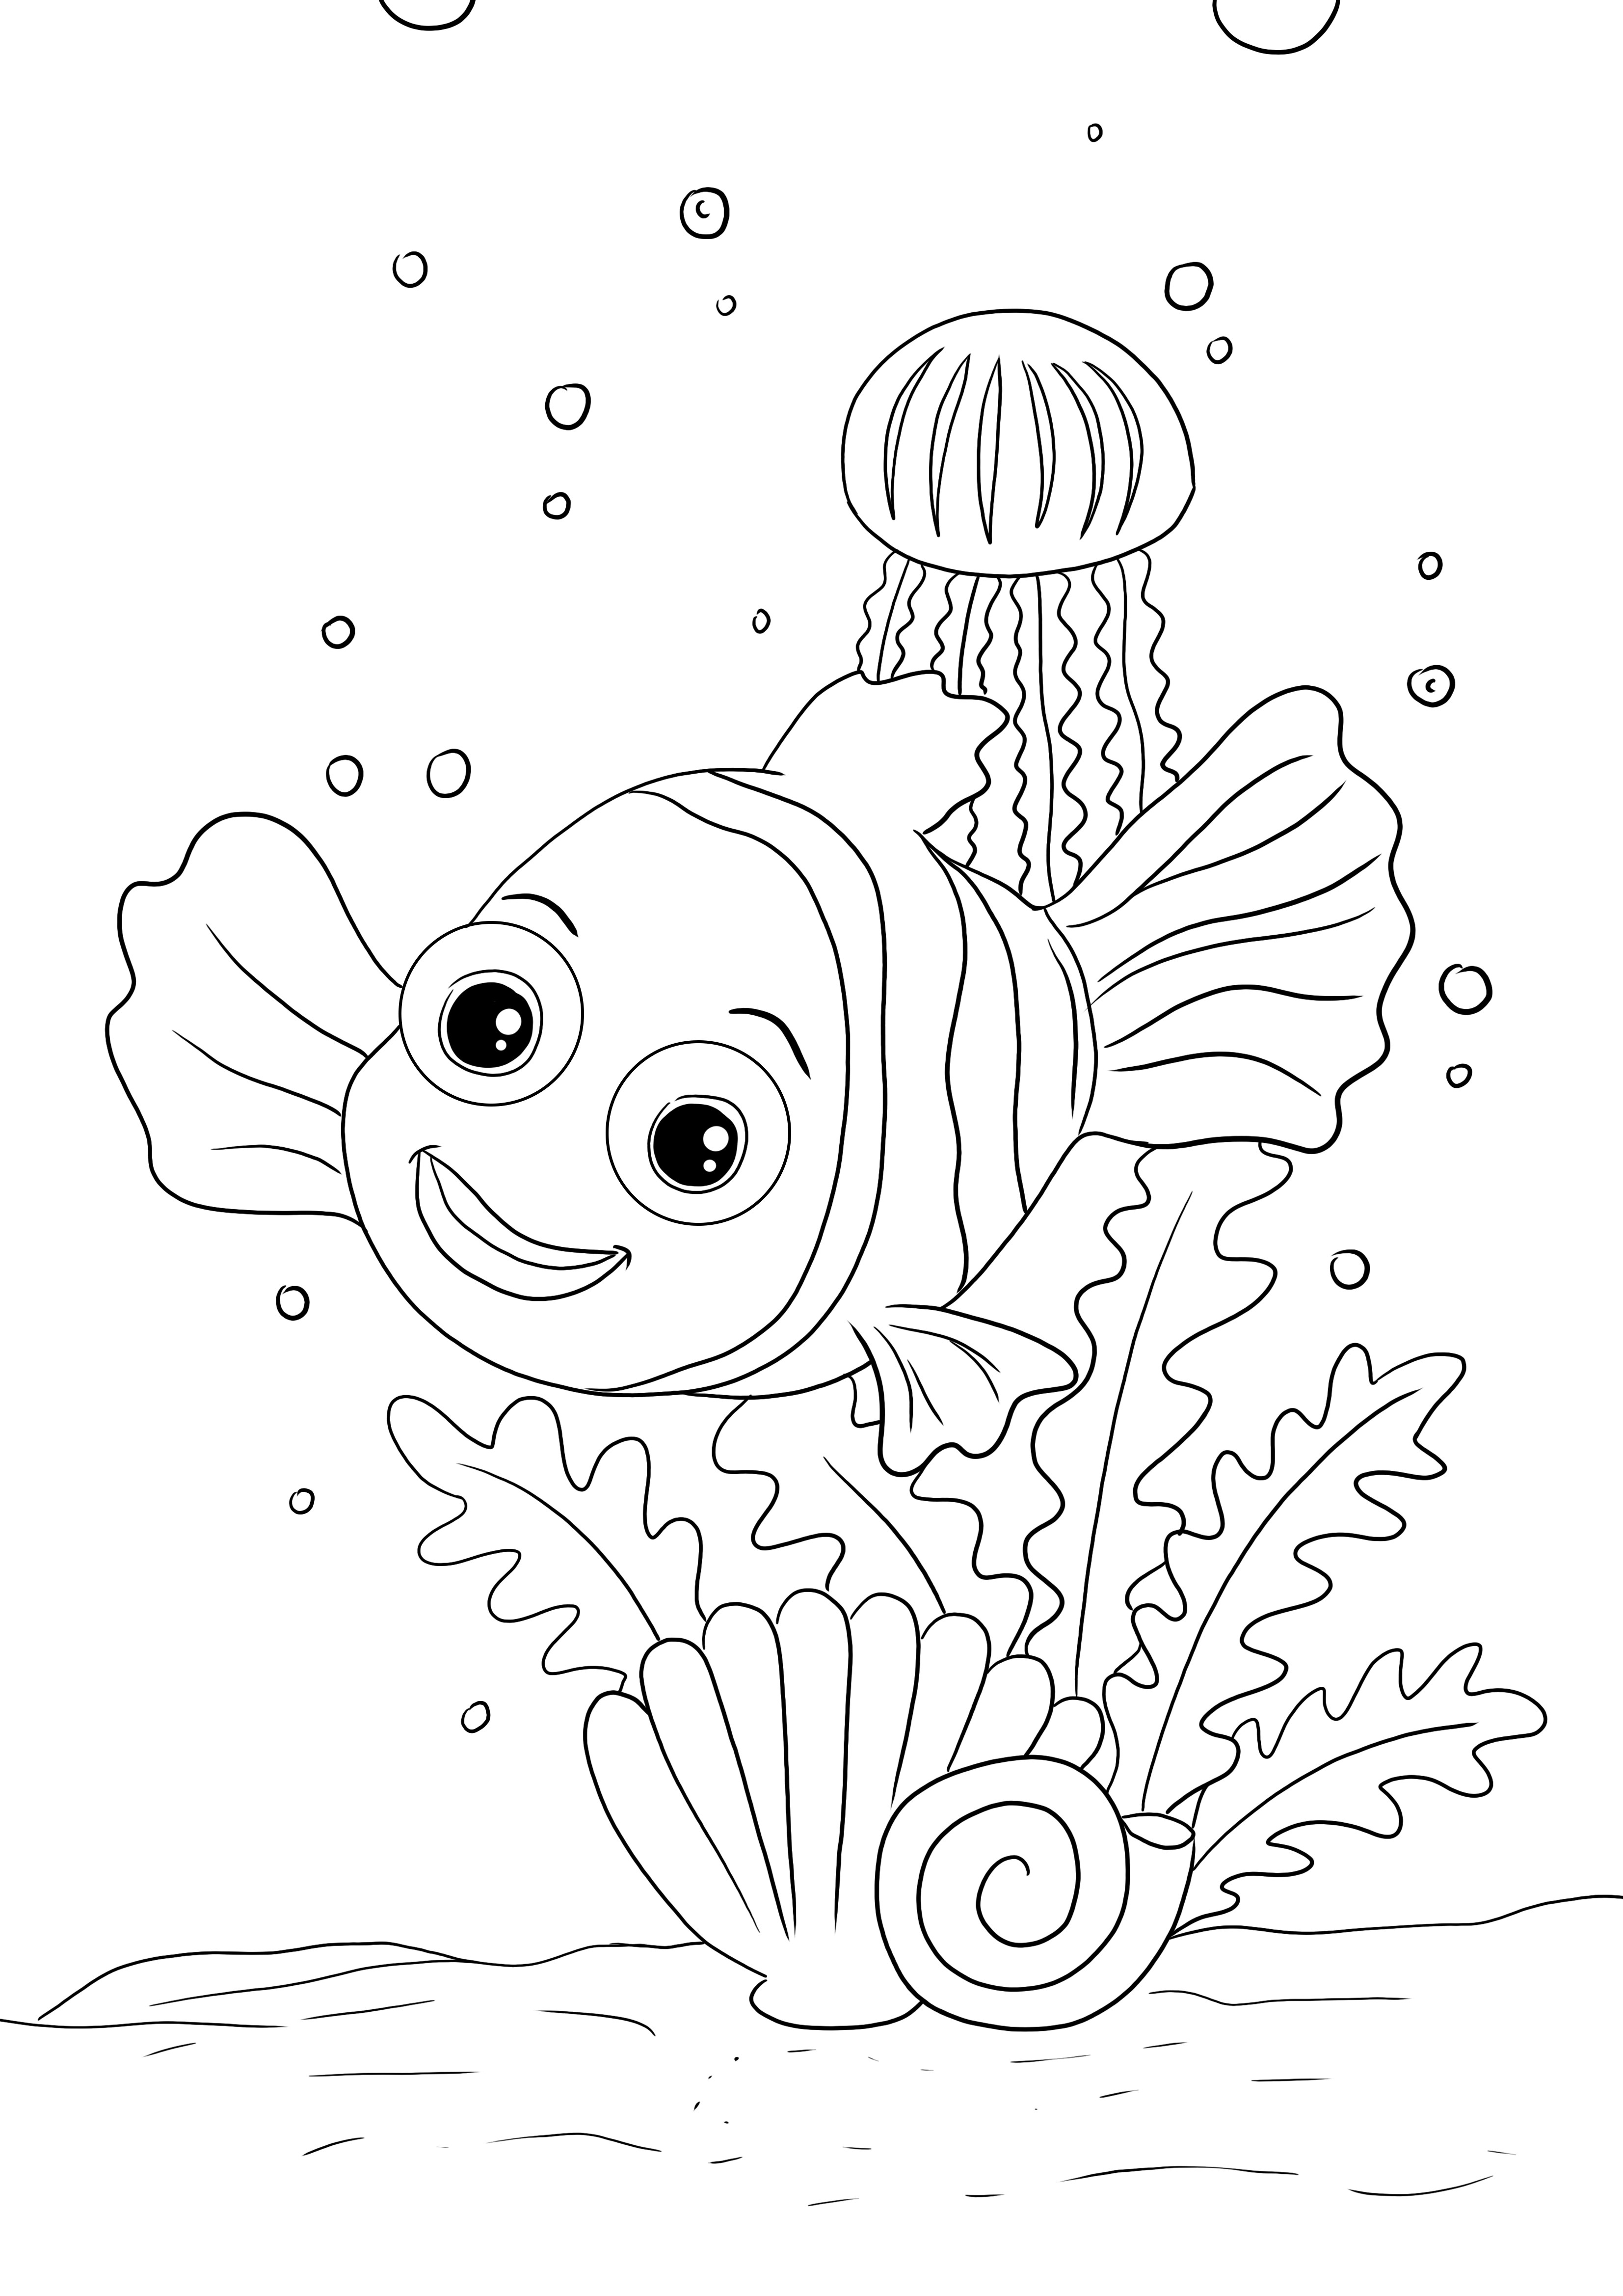 Boyama ve öğrenme için ücretsiz yazdırılabilir Happy Nemo